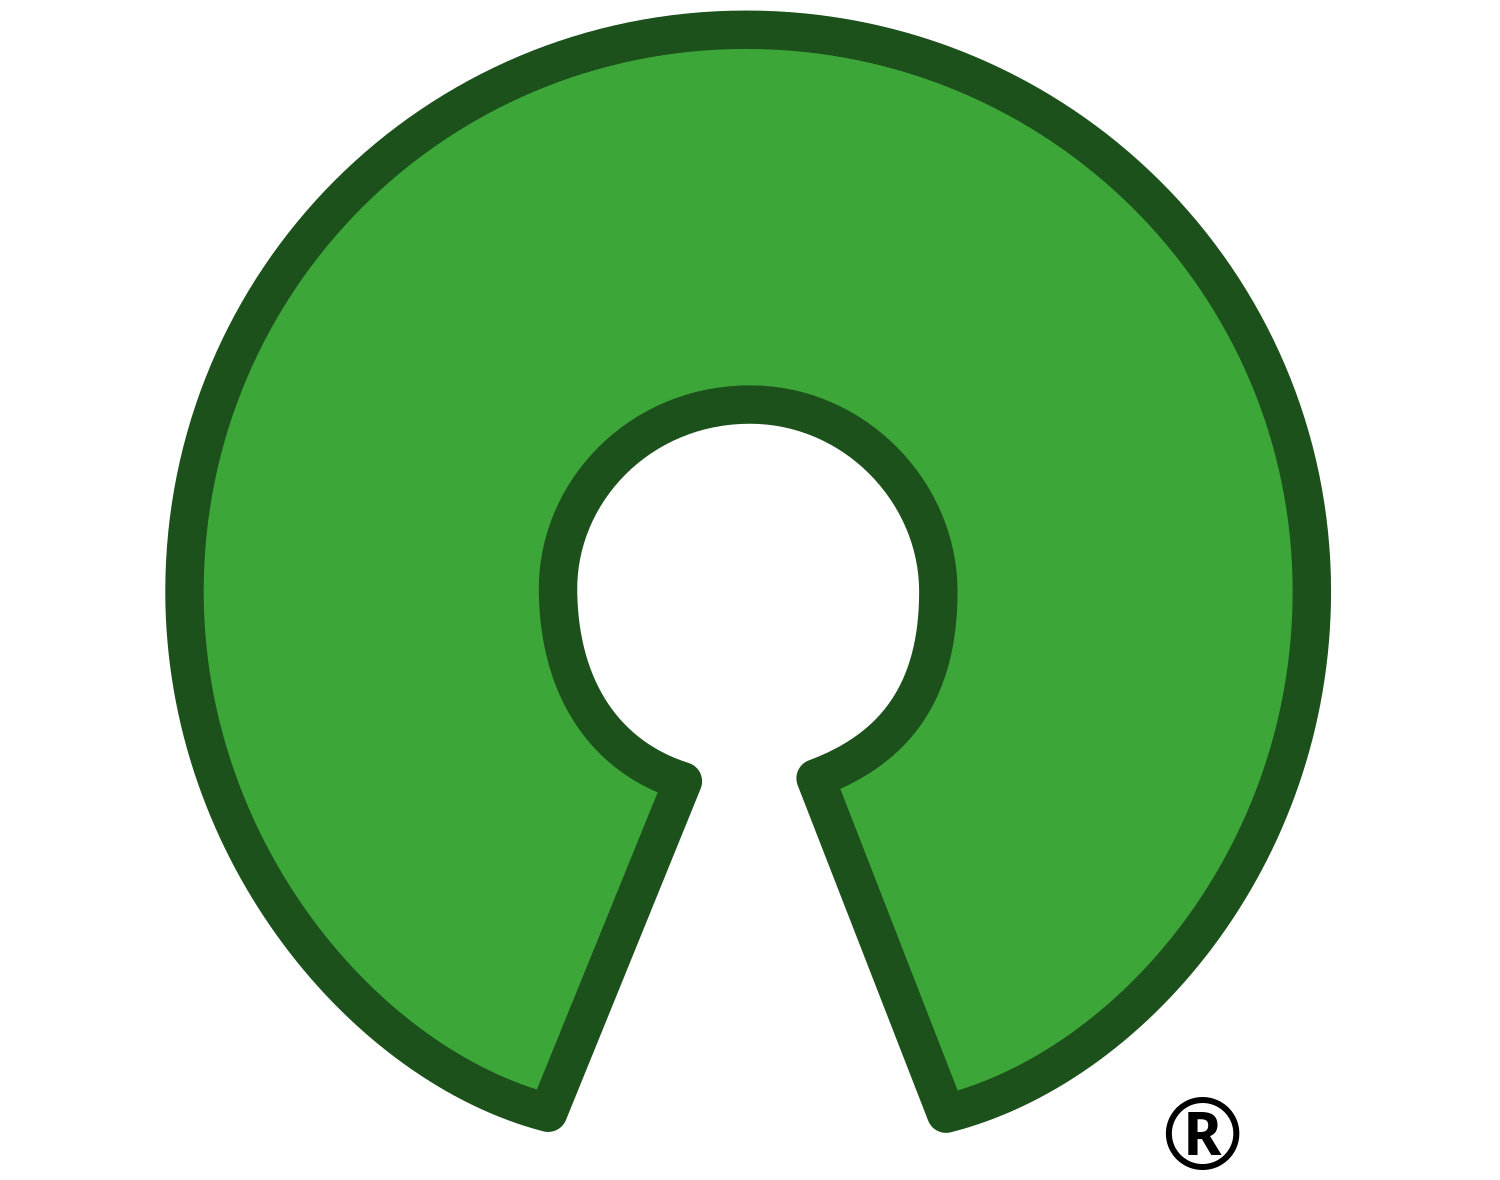 Open Source Initiative Symbol